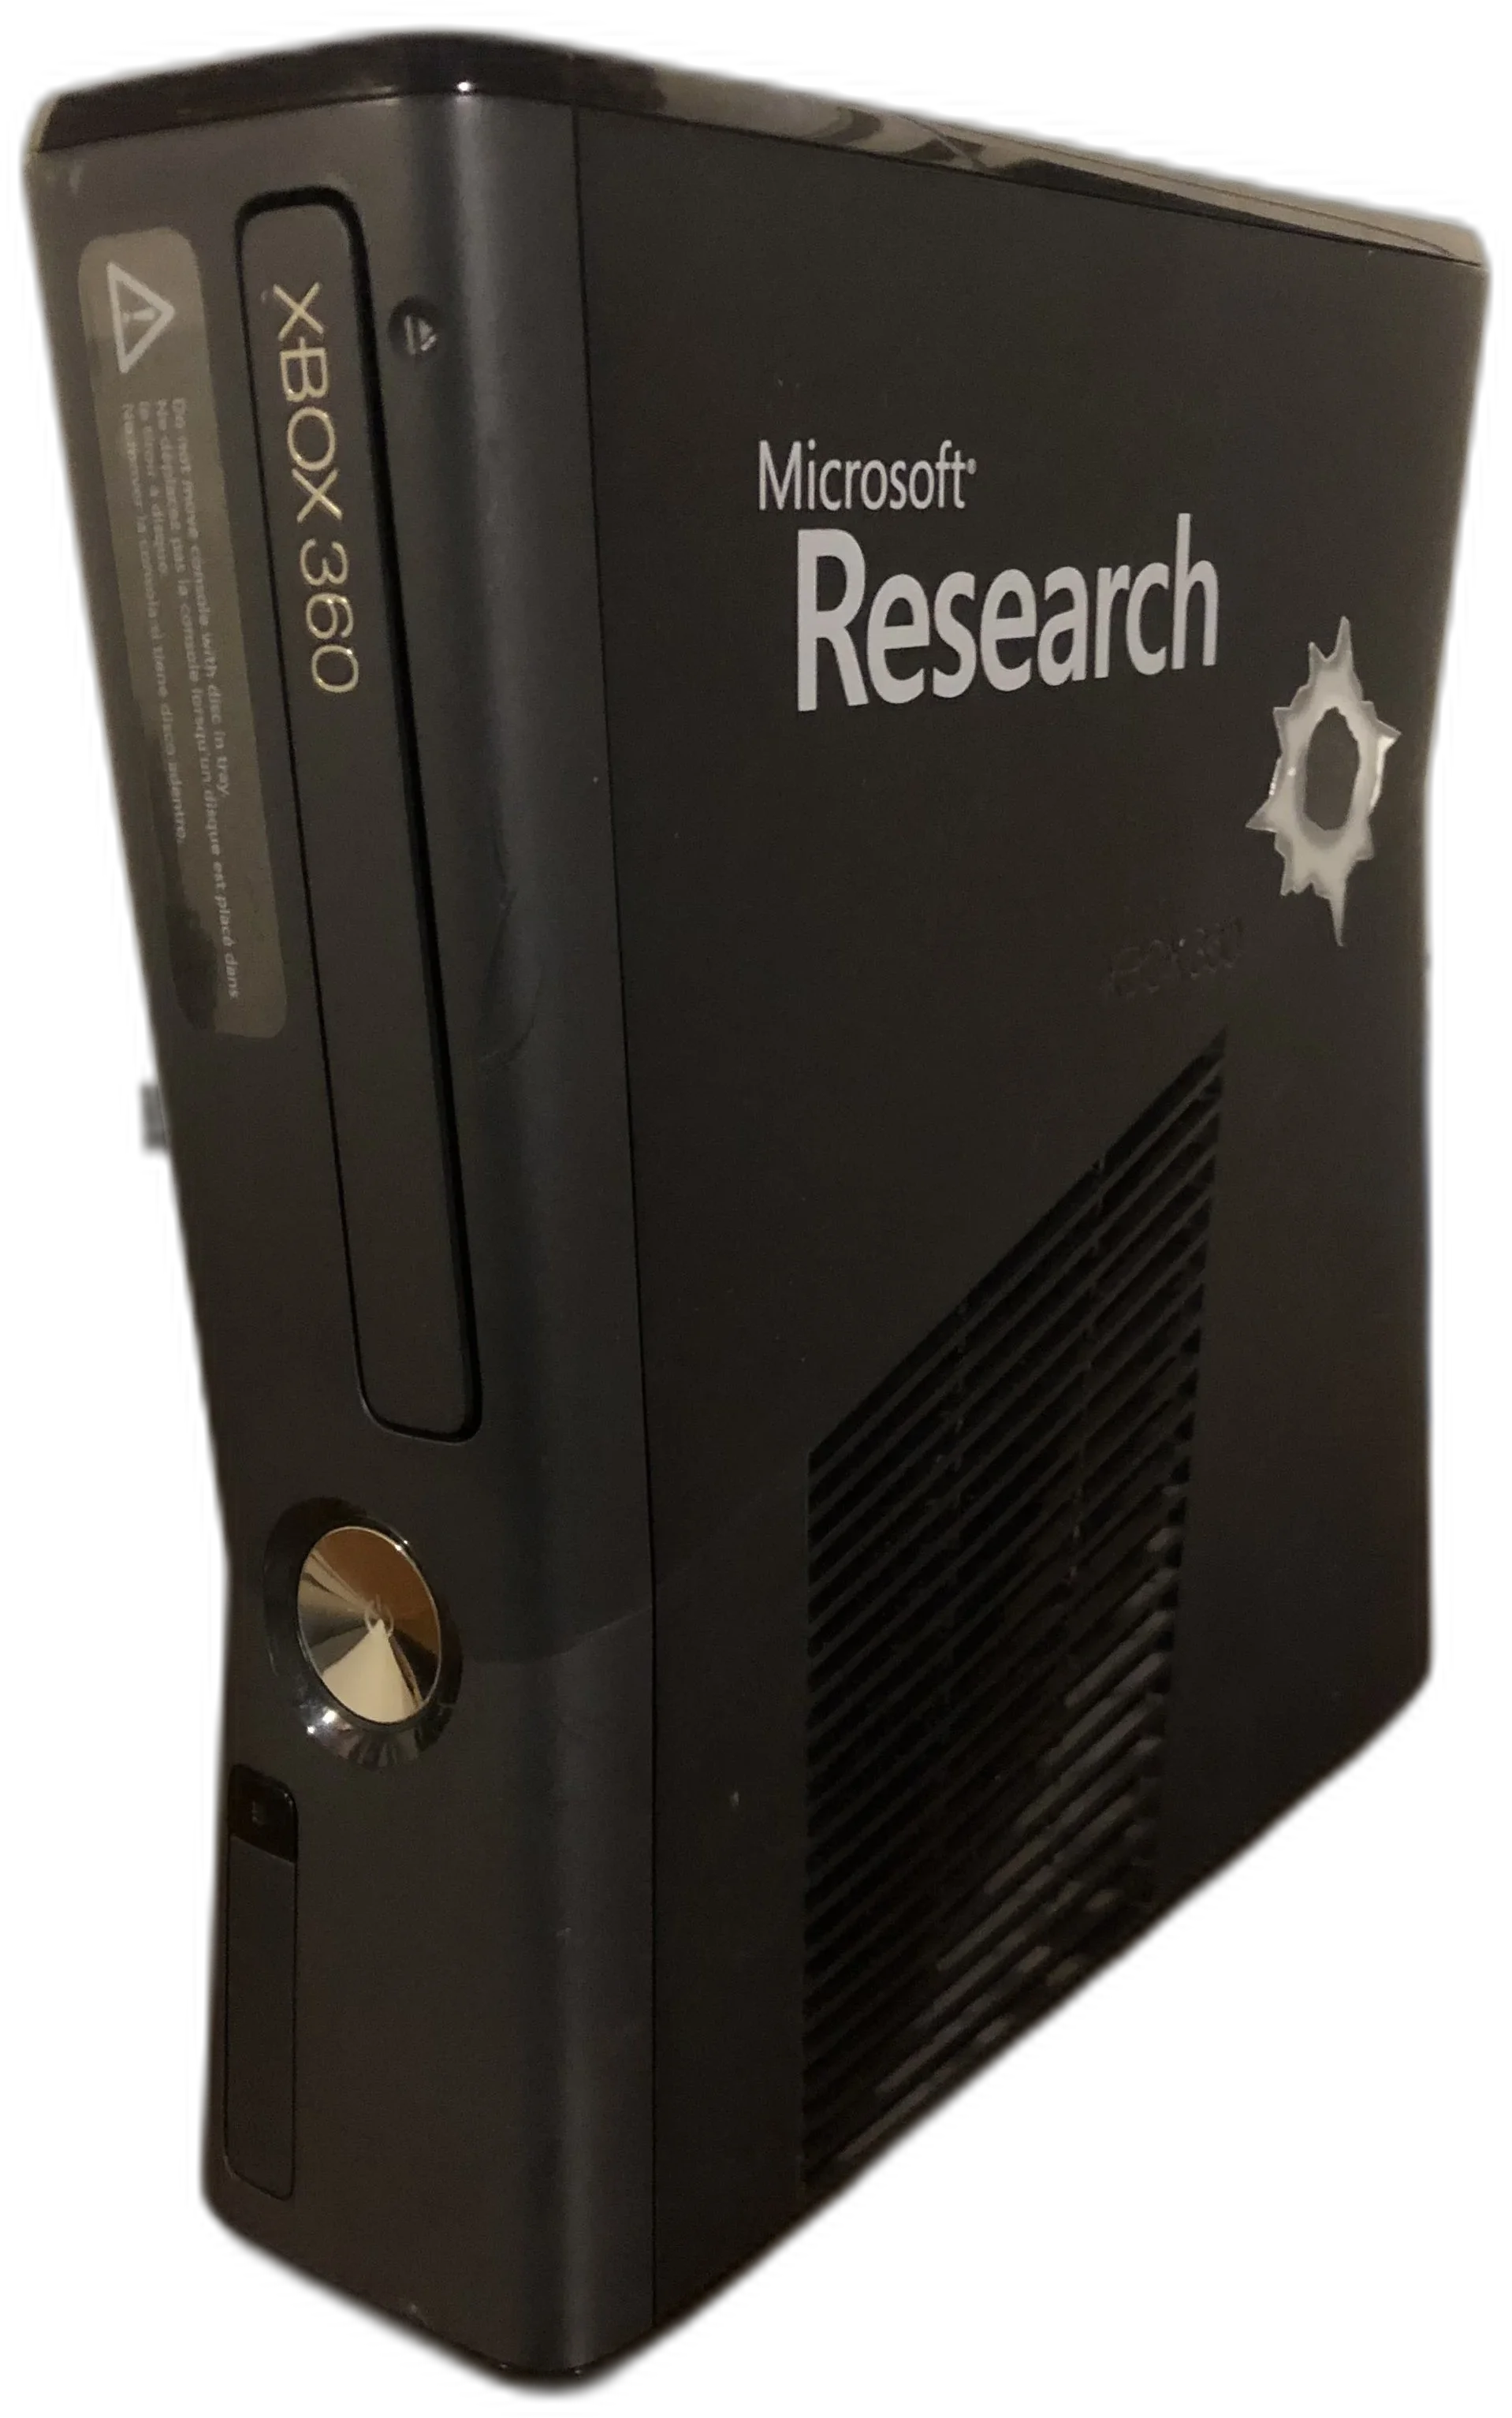  Microsoft Xbox 360 Research Console